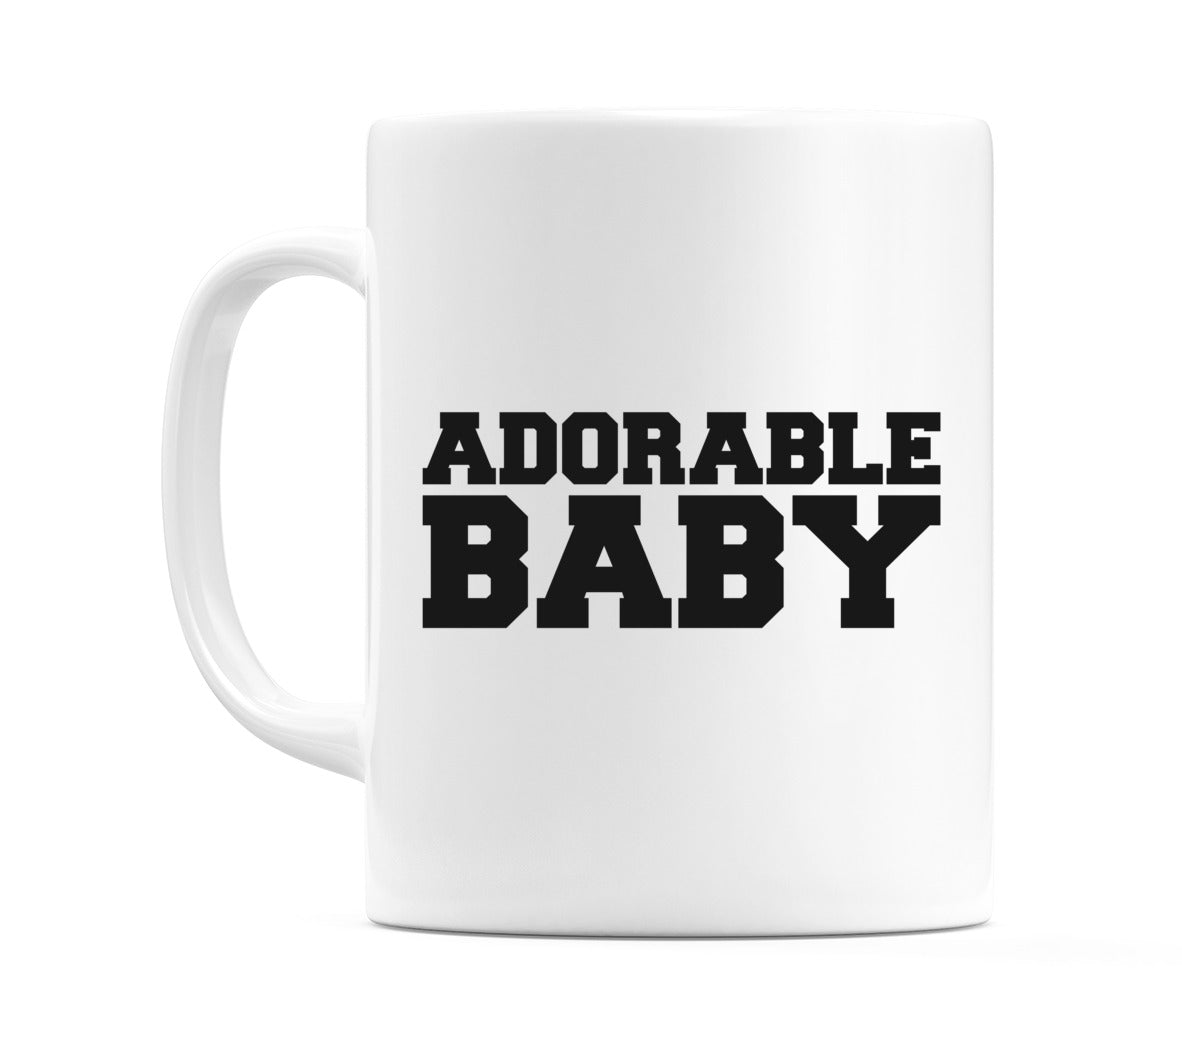 Adorable Baby Mug